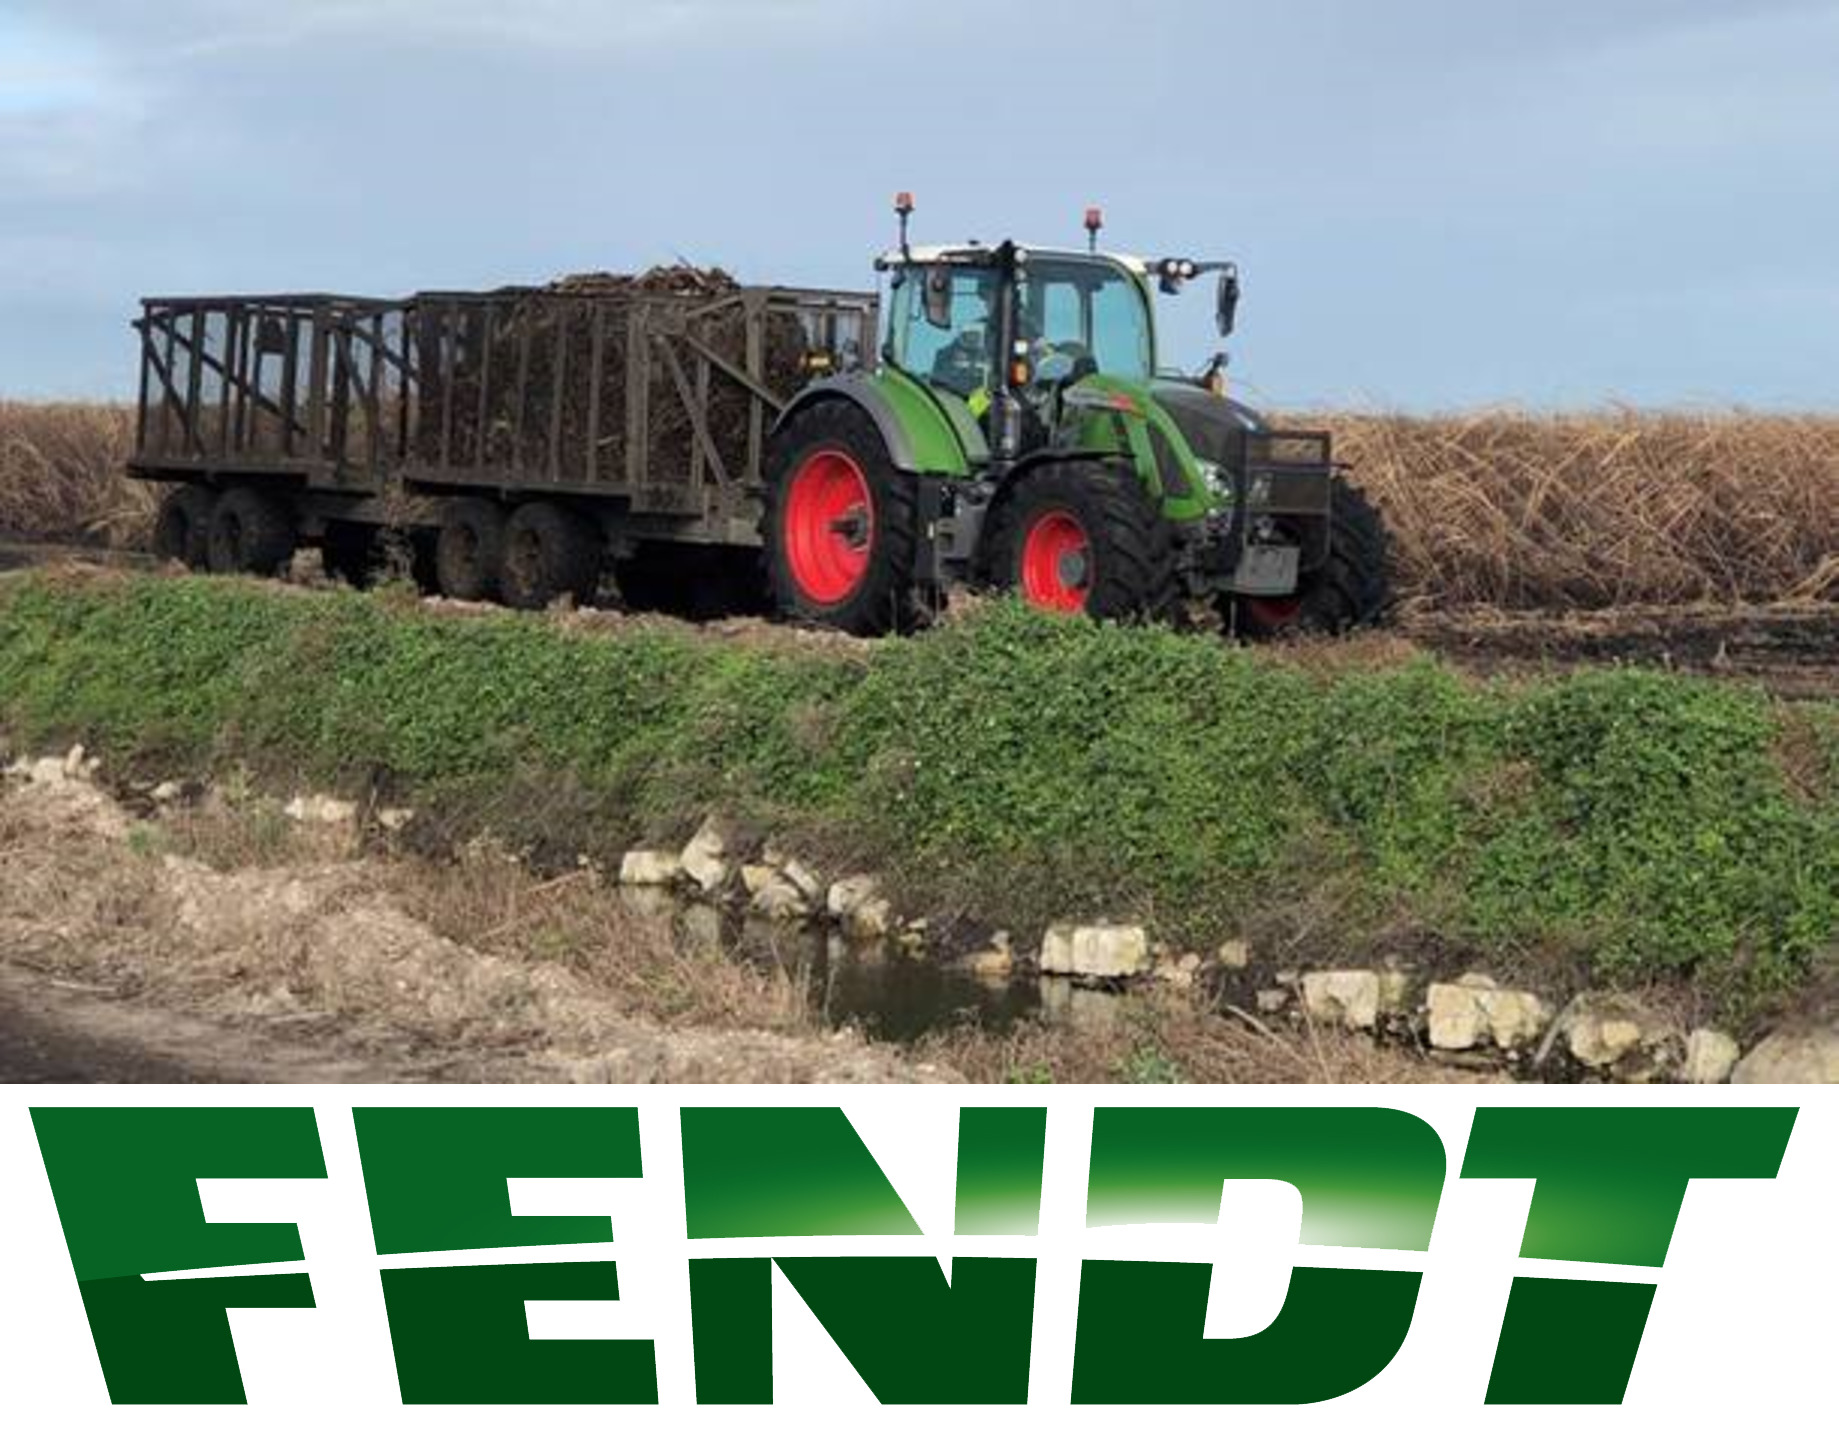 Fendt Tractor rentals